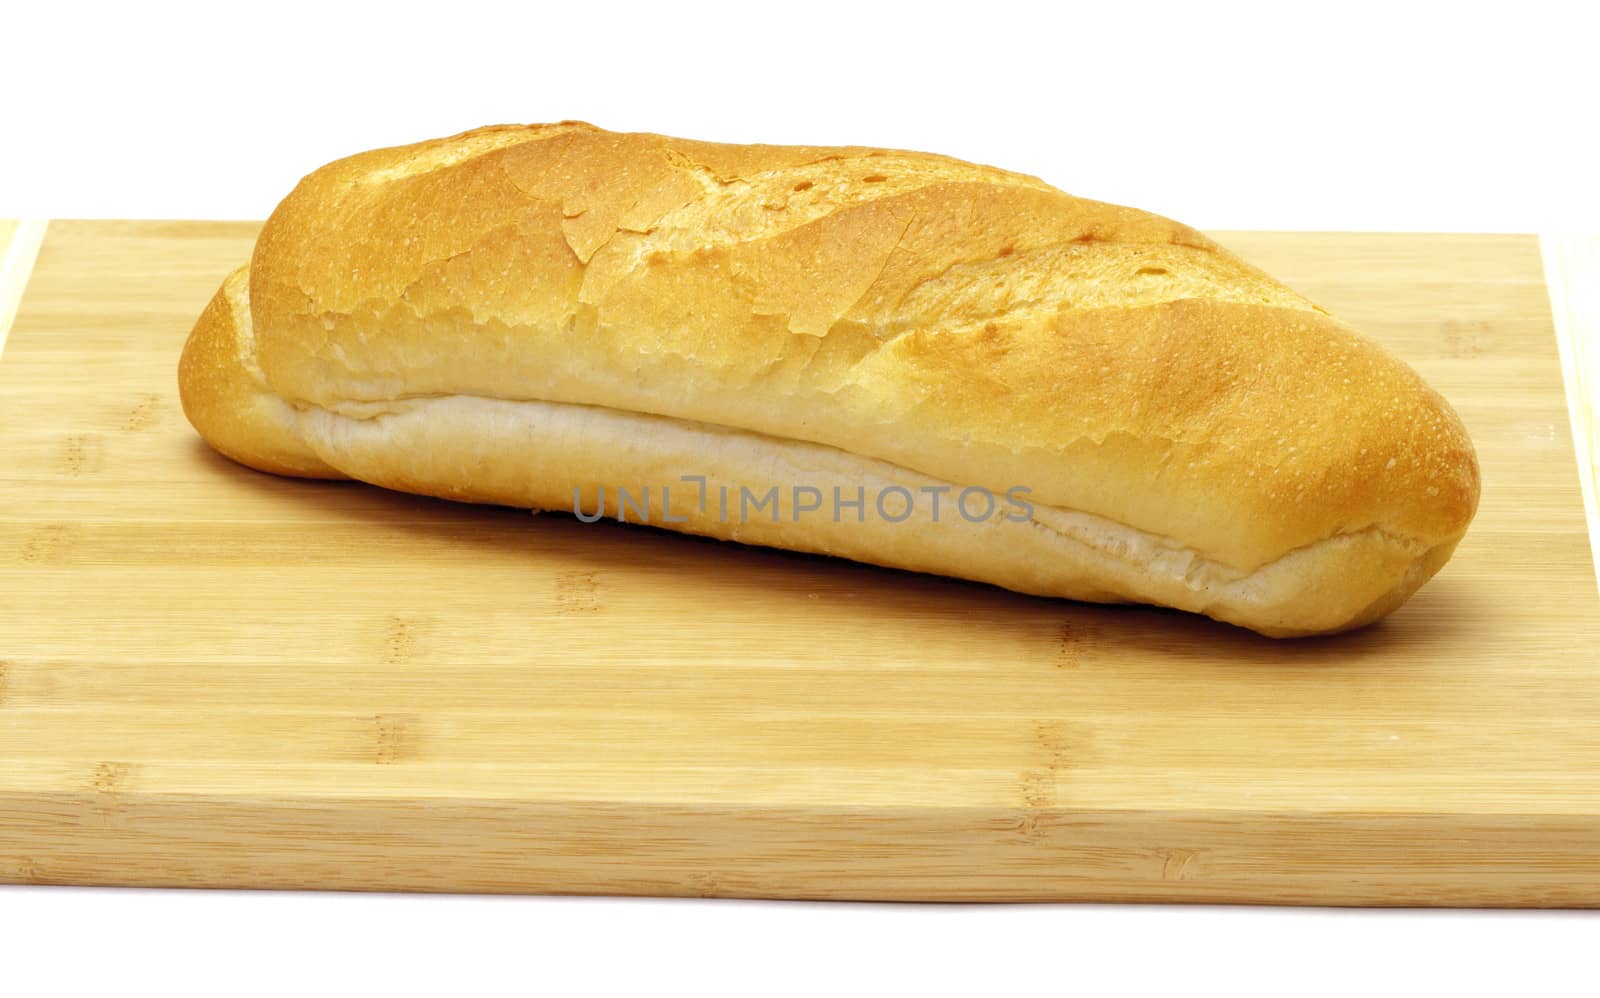 Wheat bread by marslander